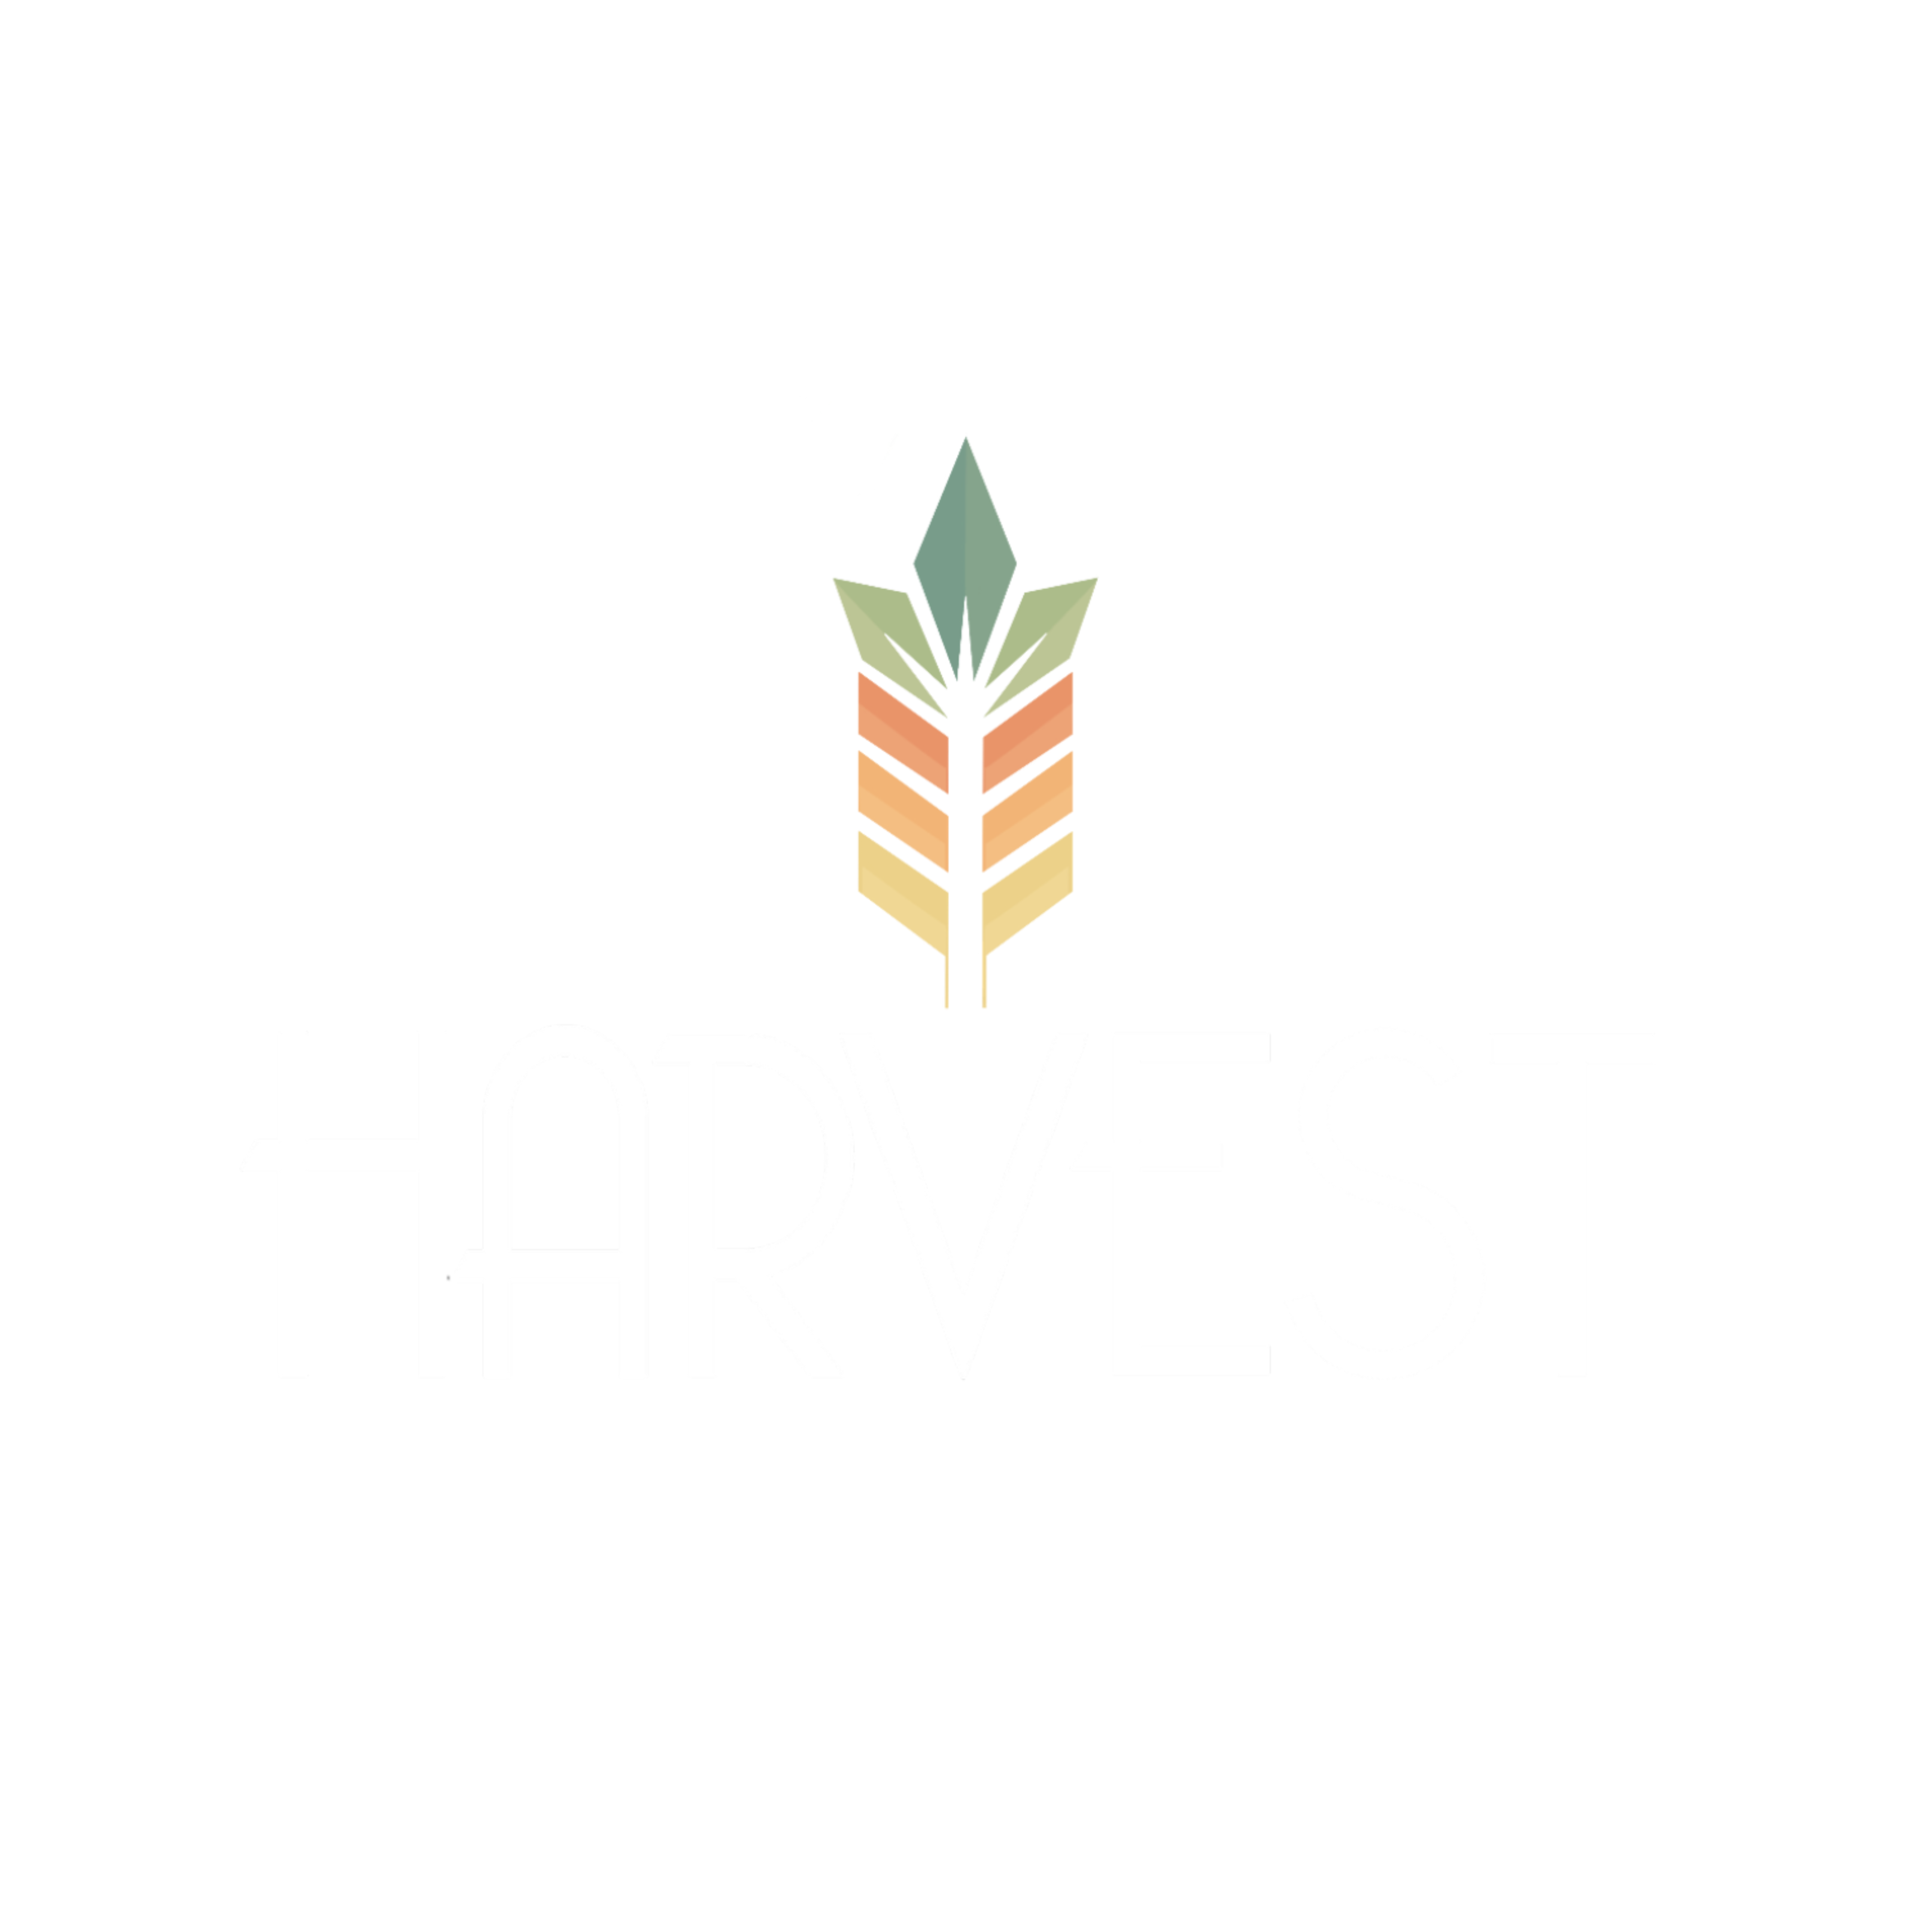 Harvest Cannabis Co.